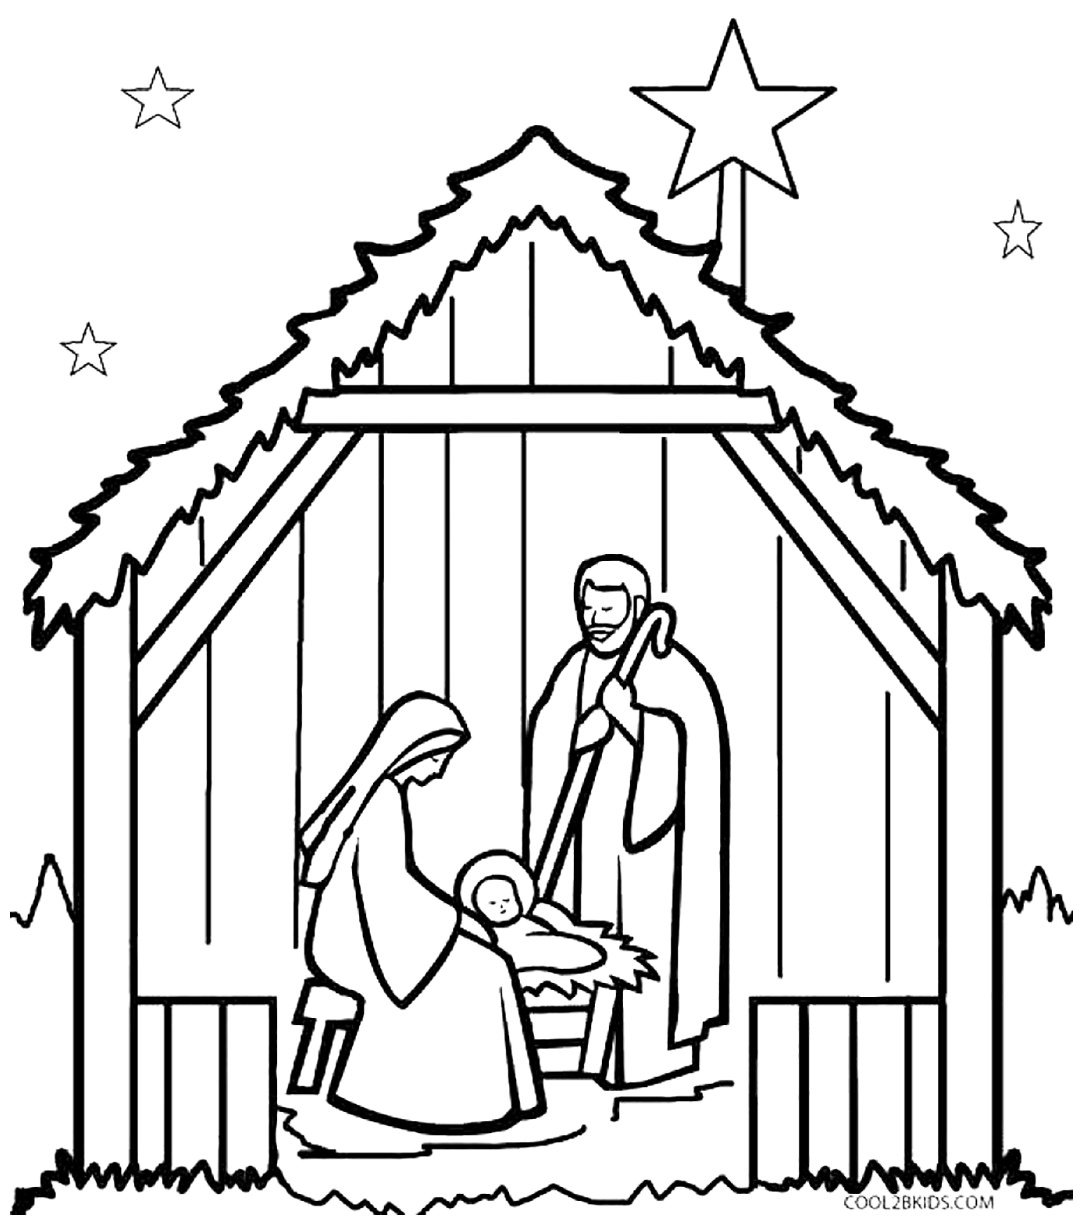 Раскраска Рождество Христово для детей